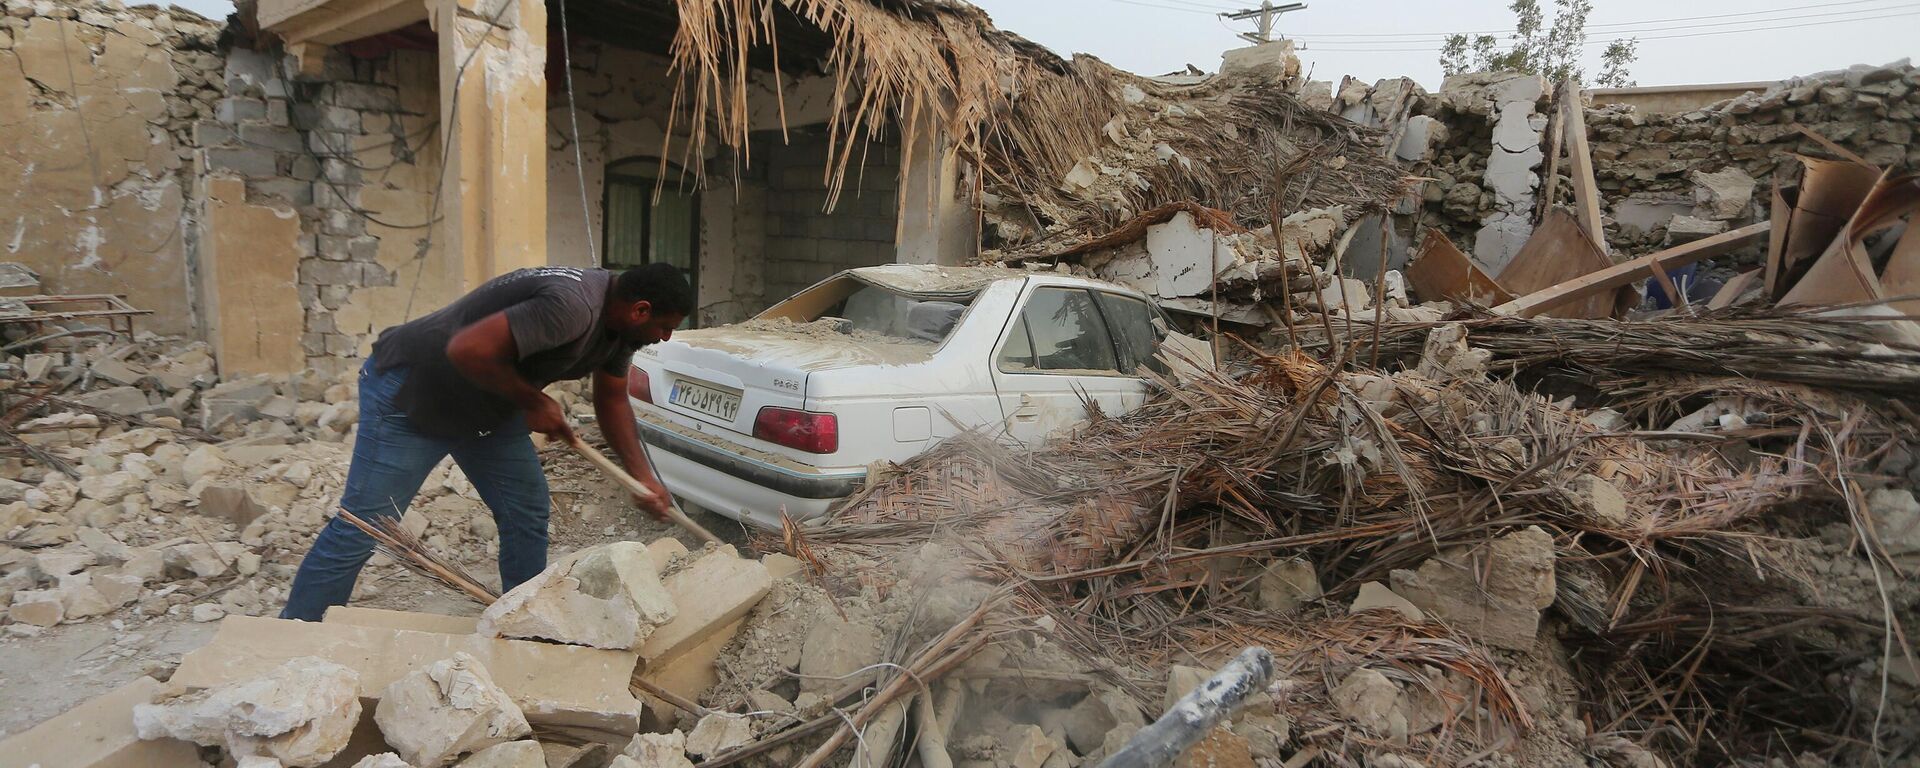 تداعيات زلزال قوي ضرب محافظة هرمزغان جنوب إيران، 2 يوليو 2022 - سبوتنيك عربي, 1920, 29.01.2023